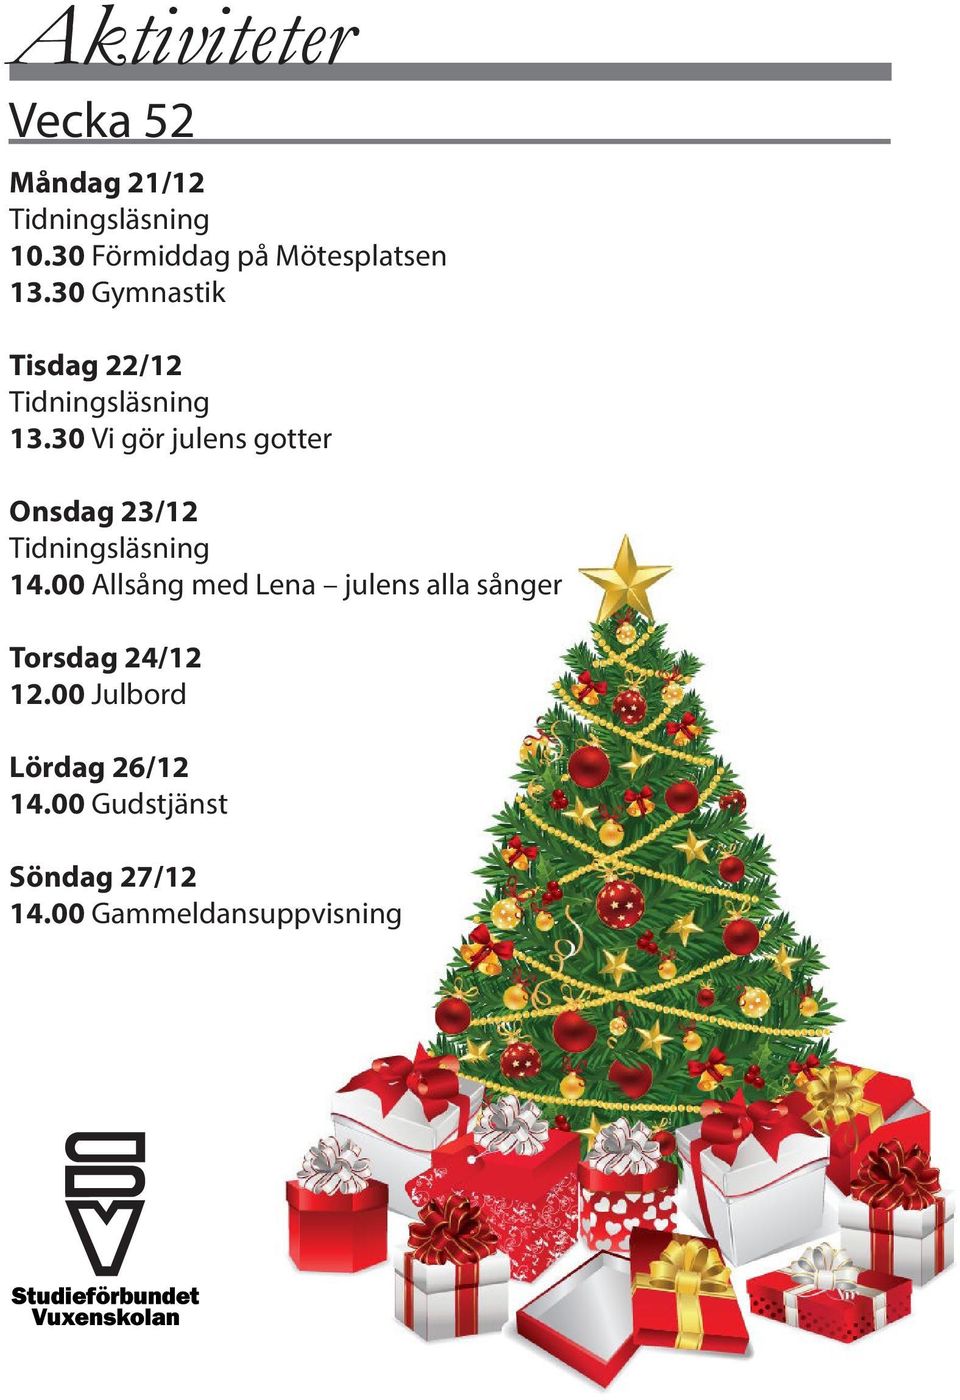 00 Allsång med Lena julens alla sånger Torsdag 24/12 12.